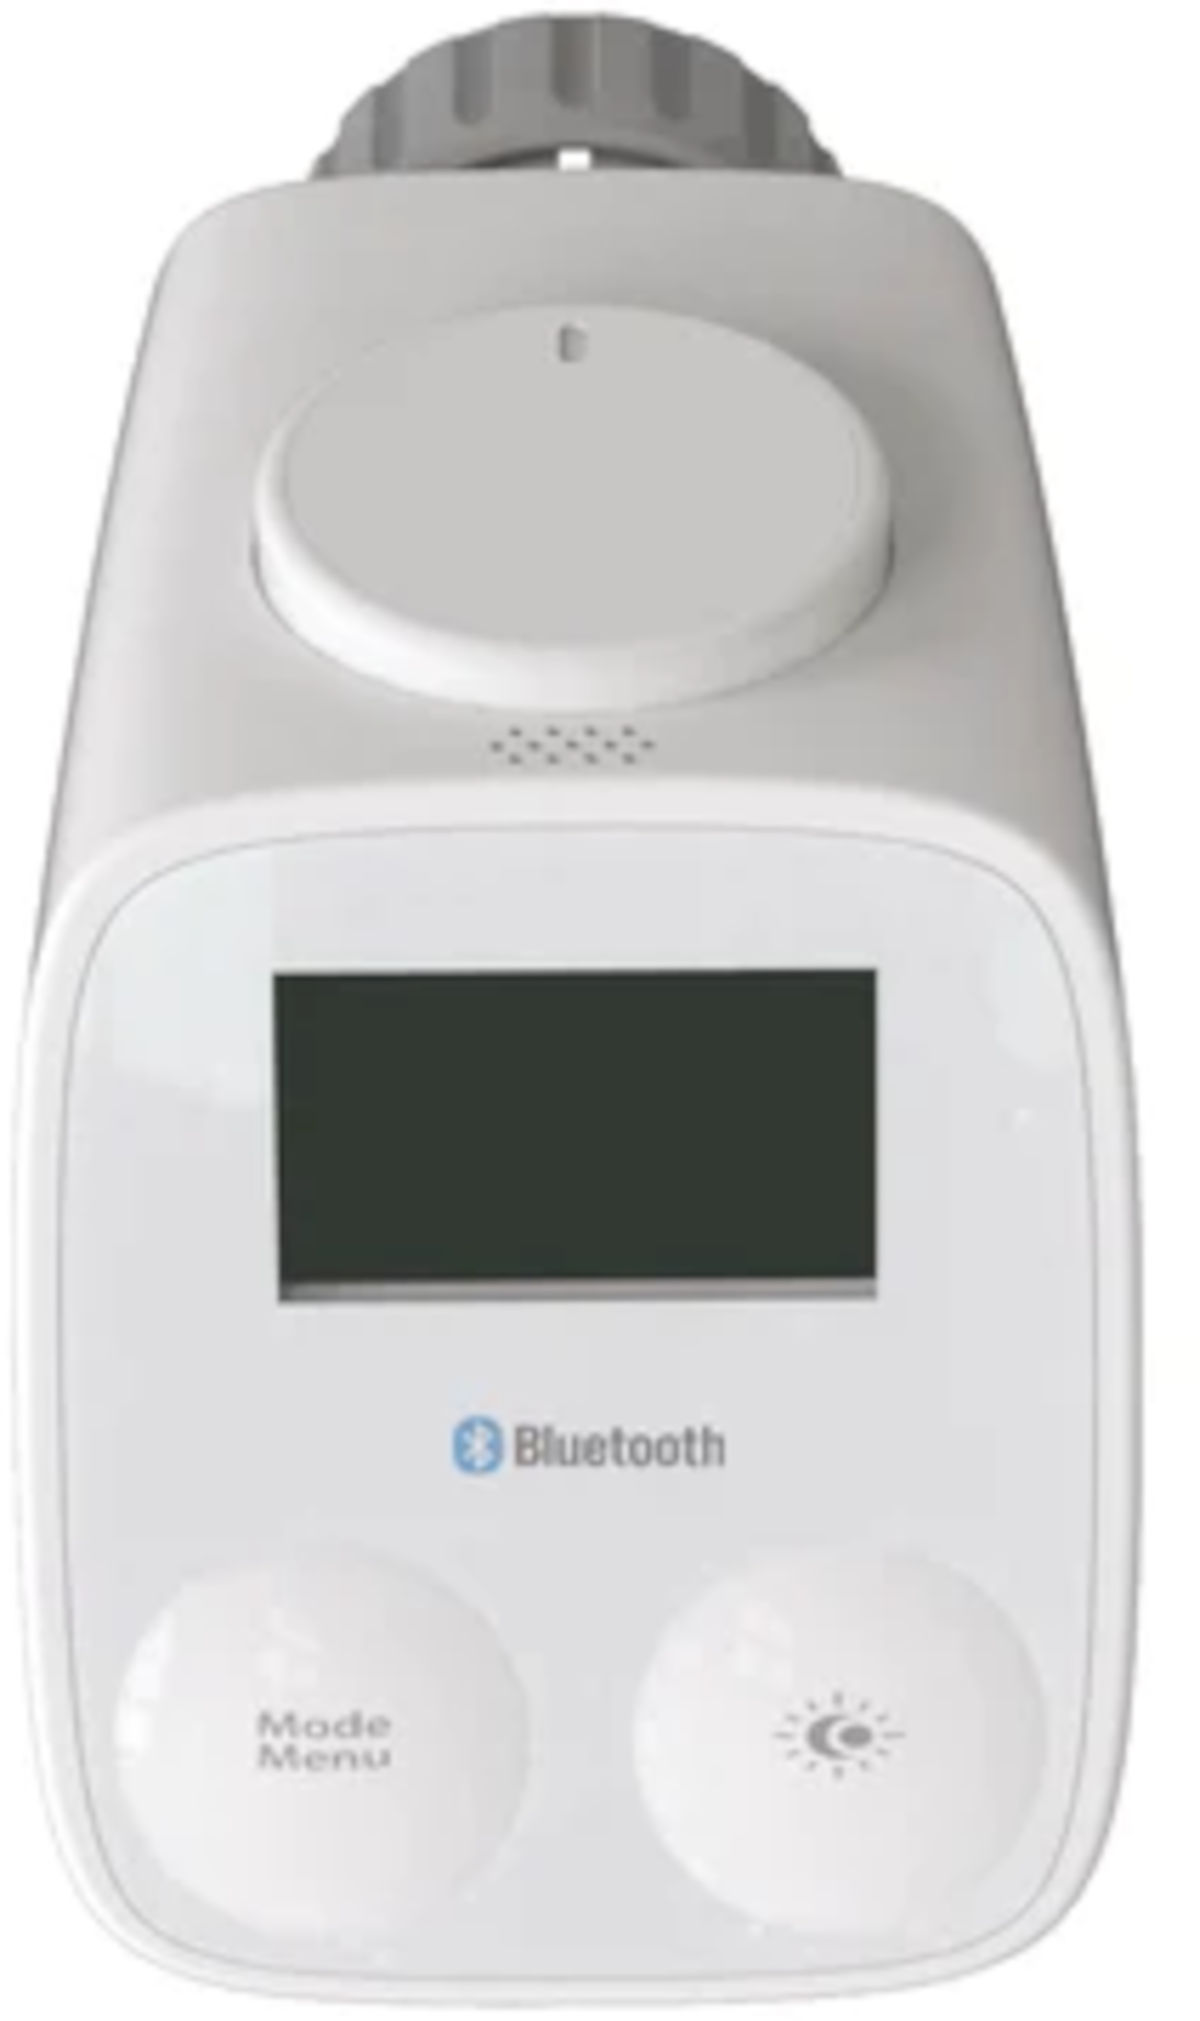 Wesmartify Heizkörperthermostat Bluetooth, Frontansicht, vor weißem Hintergrund